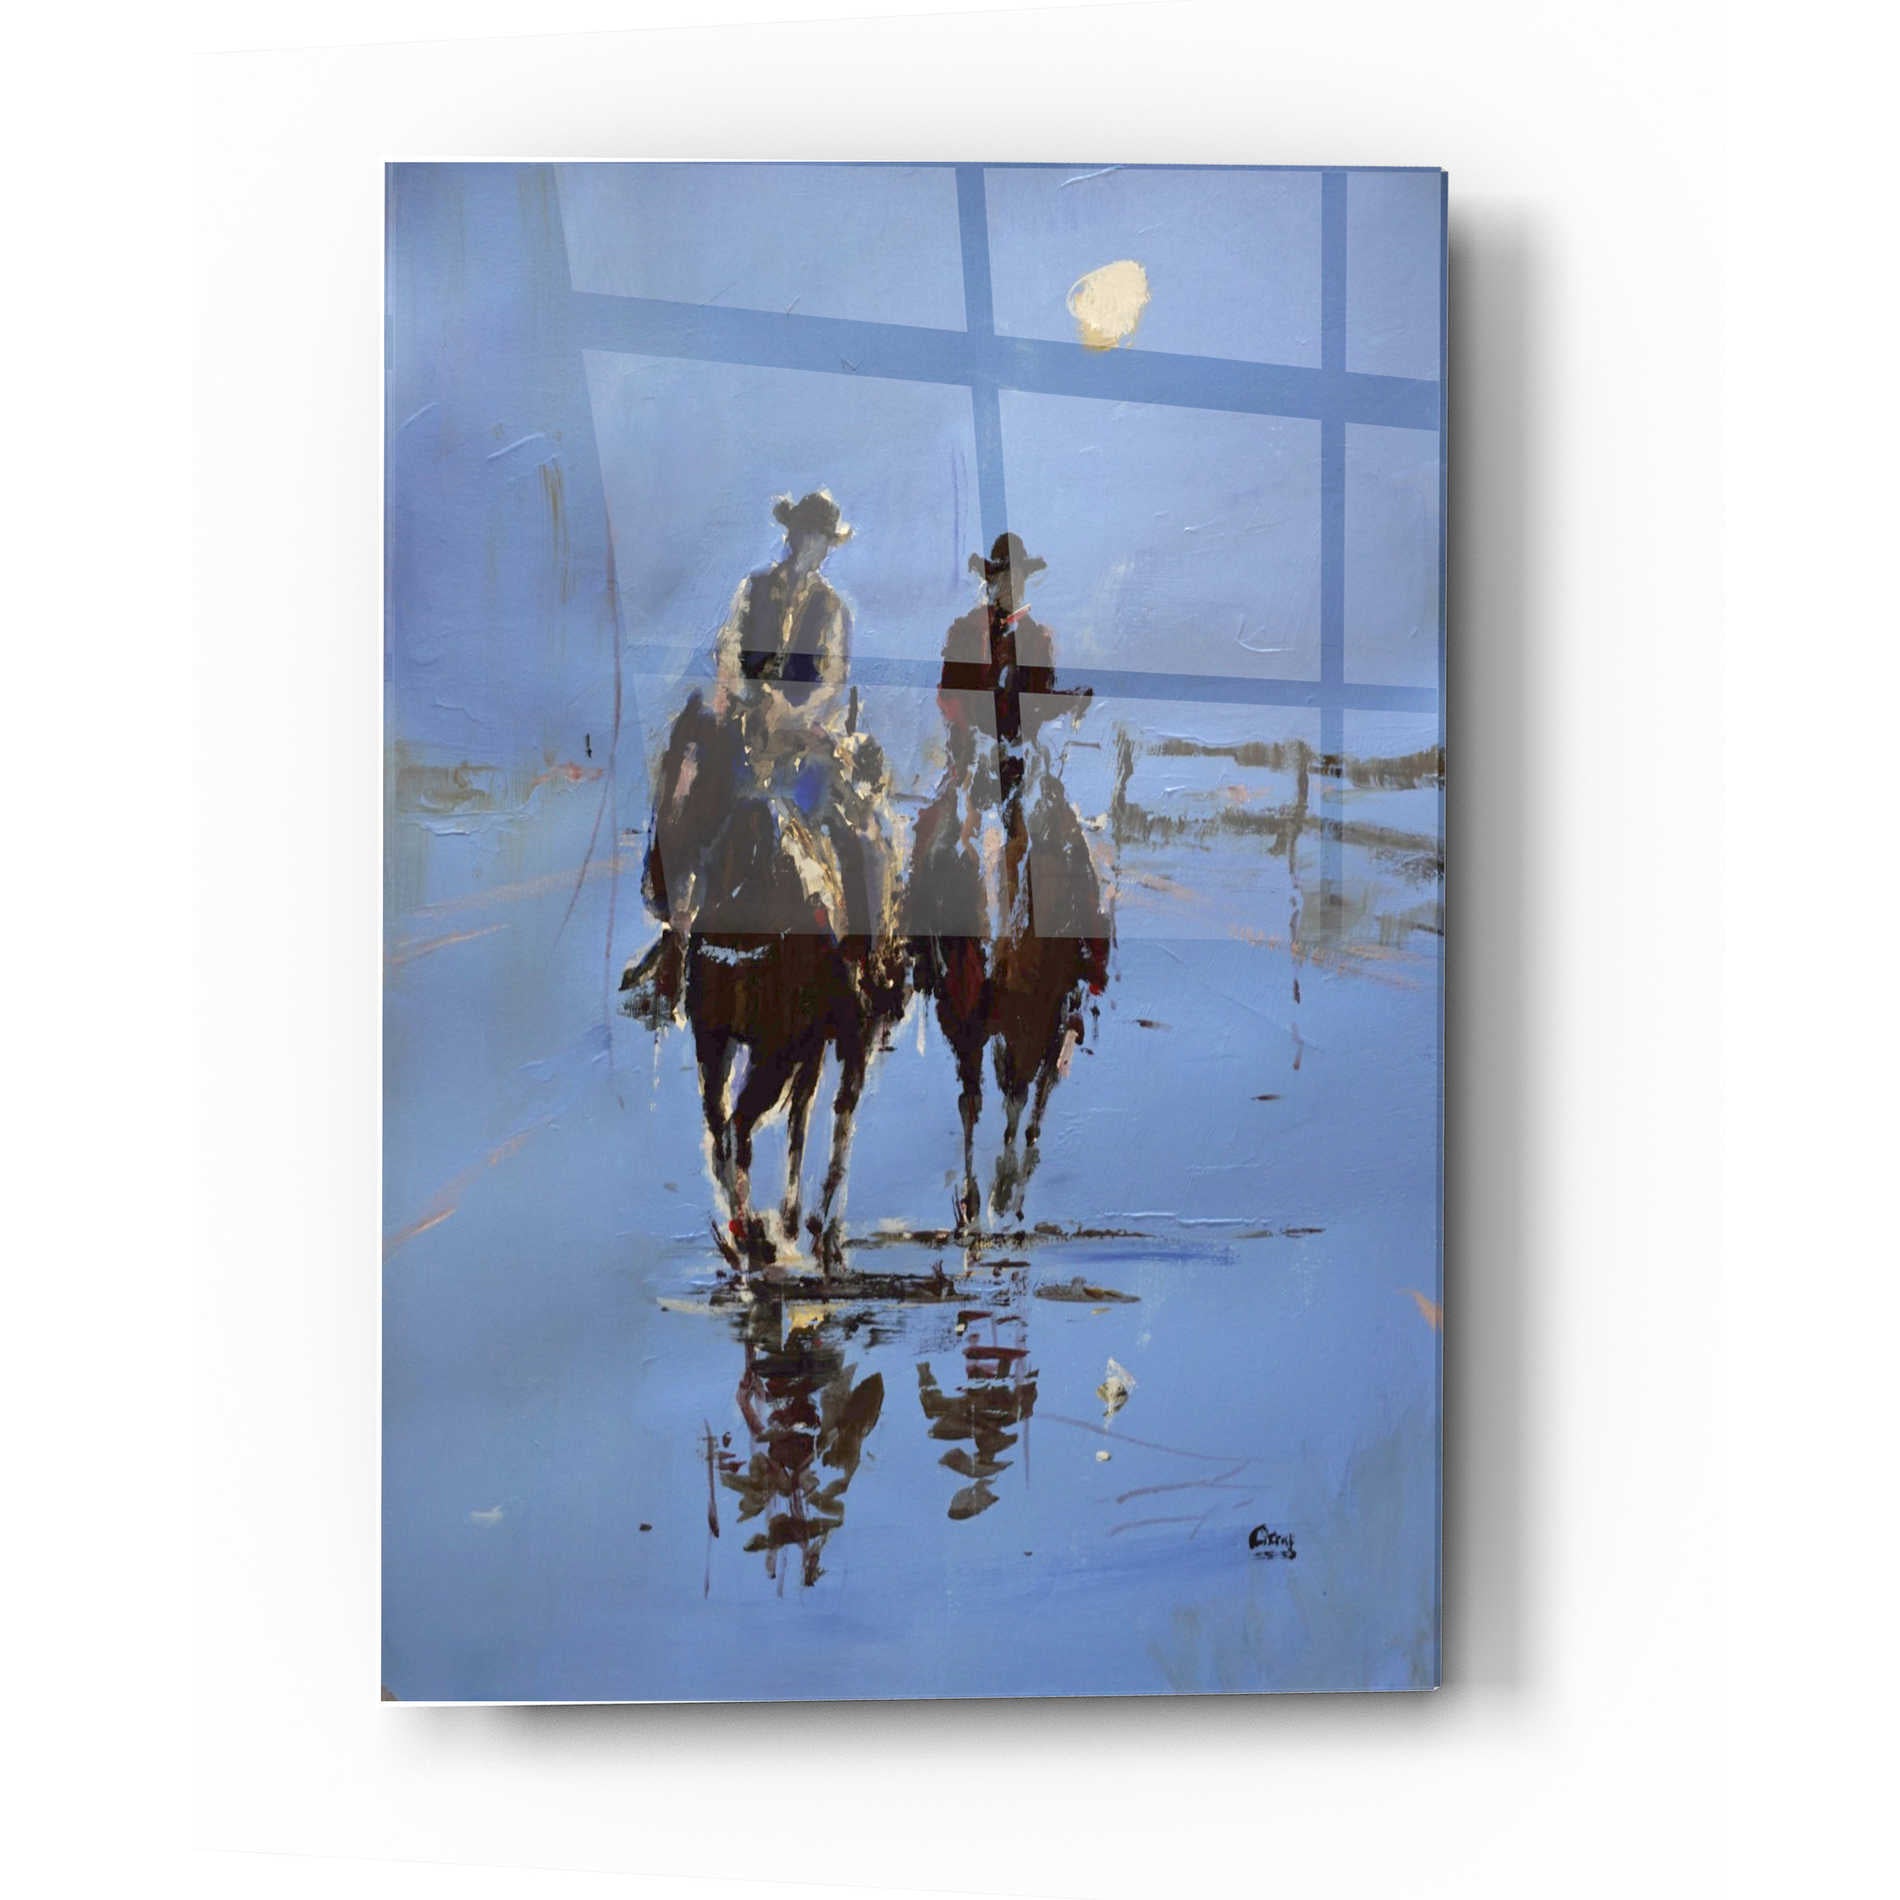 Epic Art 'Moonlight' by Oscar Alvarez Pardo, Acrylic Glass Wall Art,16x24